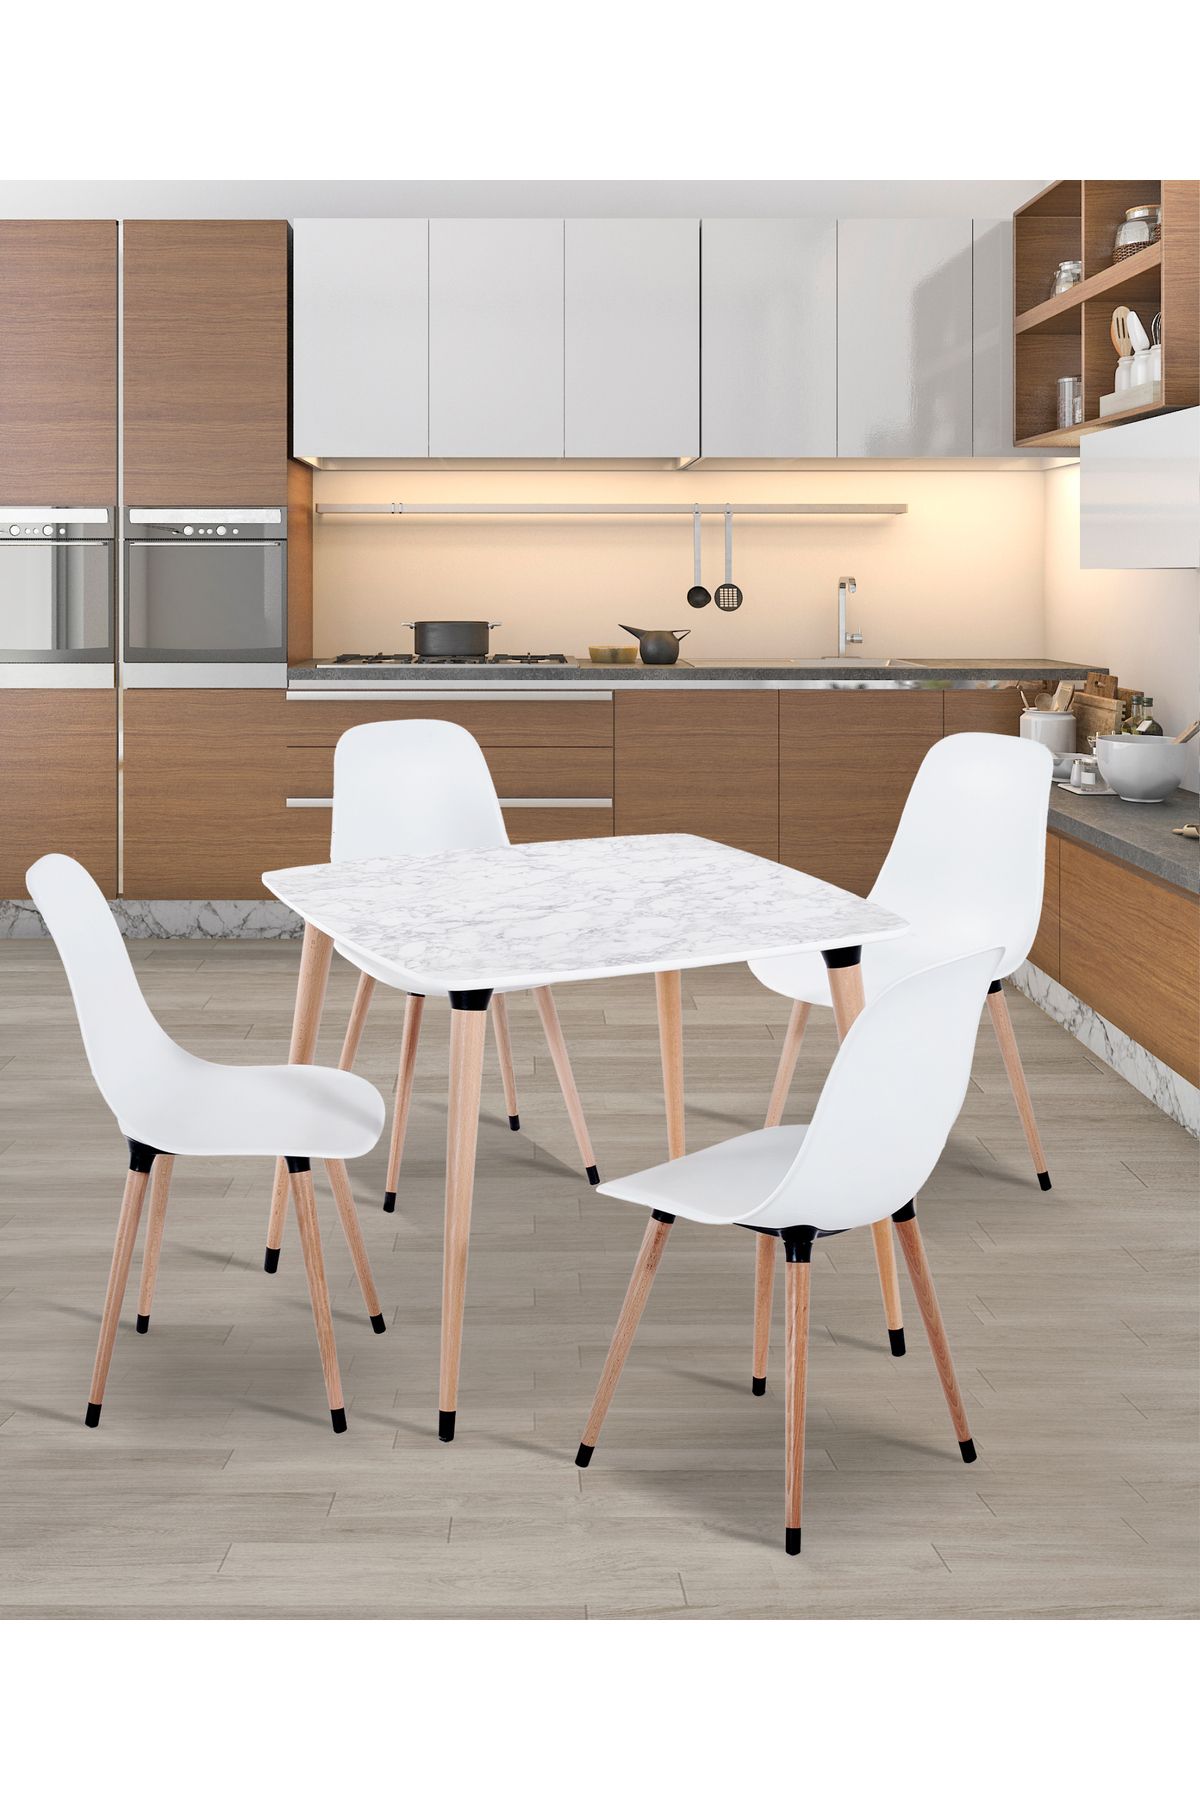 Estelia Yemek Masası Takımı Mutfak Masası 90x90 Cm Ahşap Ayaklı Beyaz Masa 4 Adet Abant Beyaz Sandalye